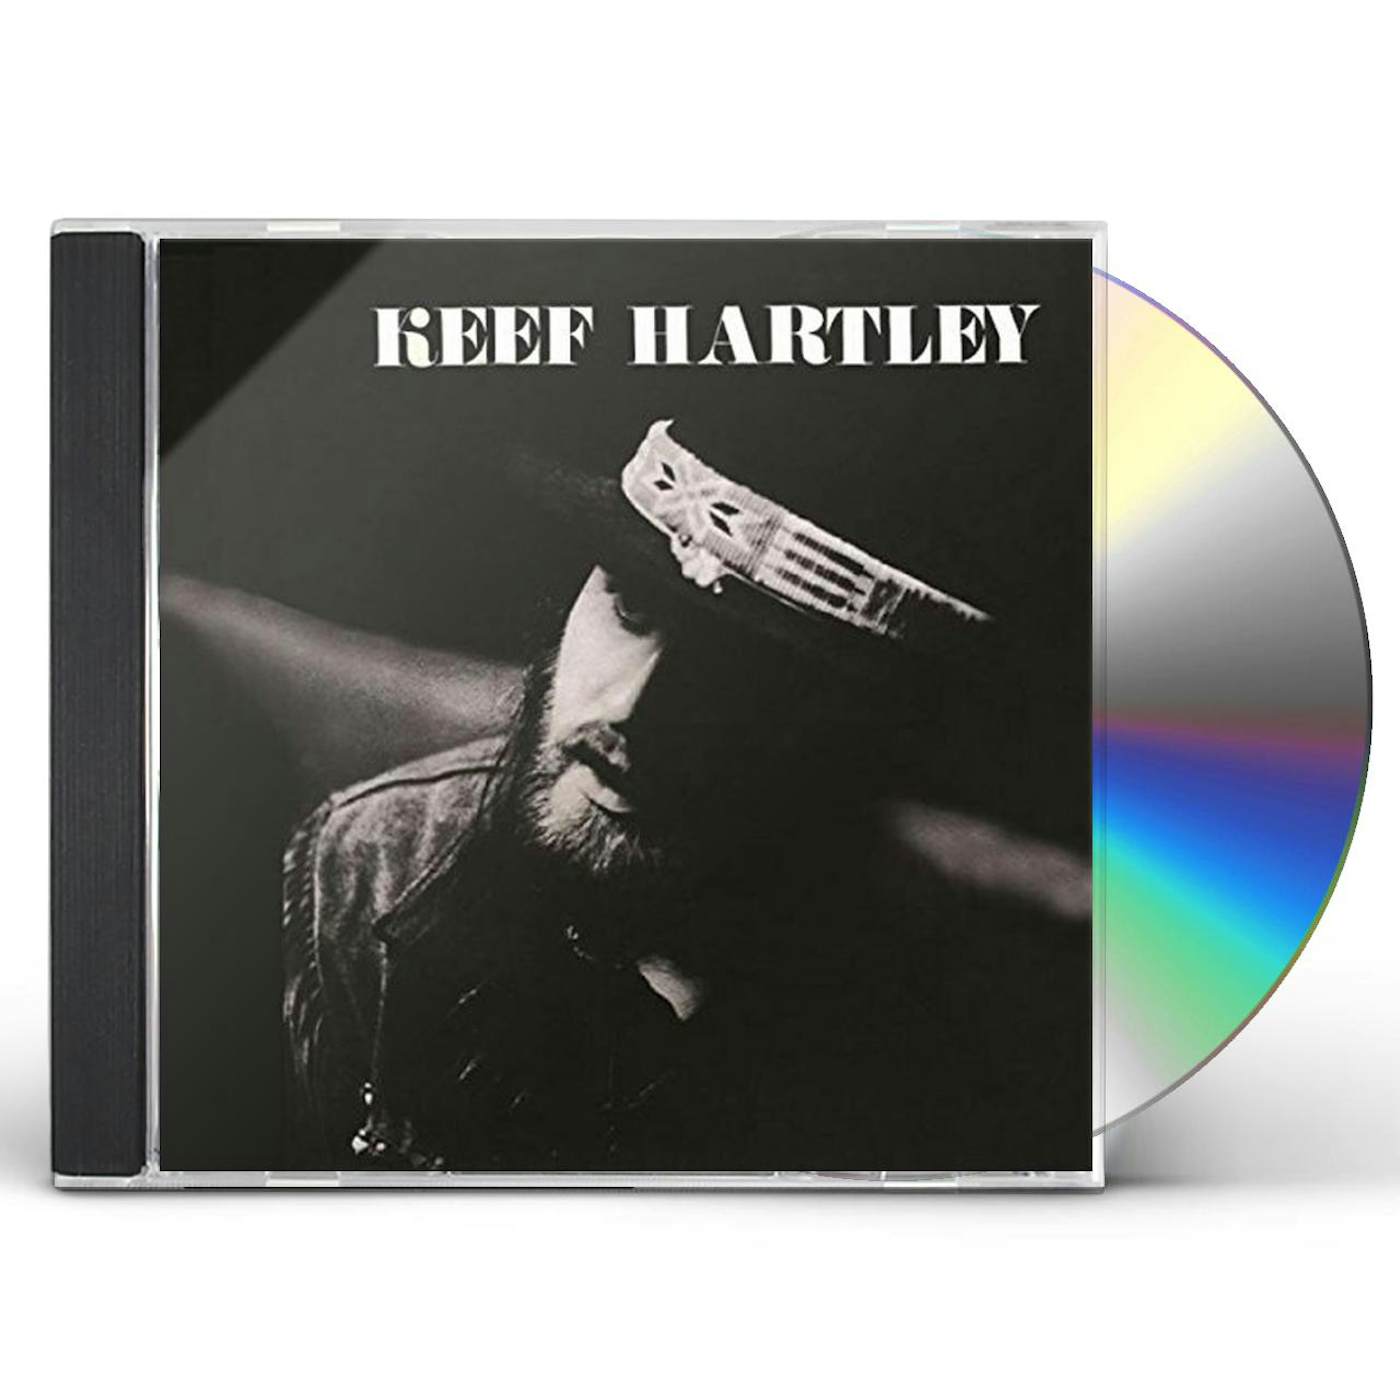 BEST OF KEEF HARTLEY CD